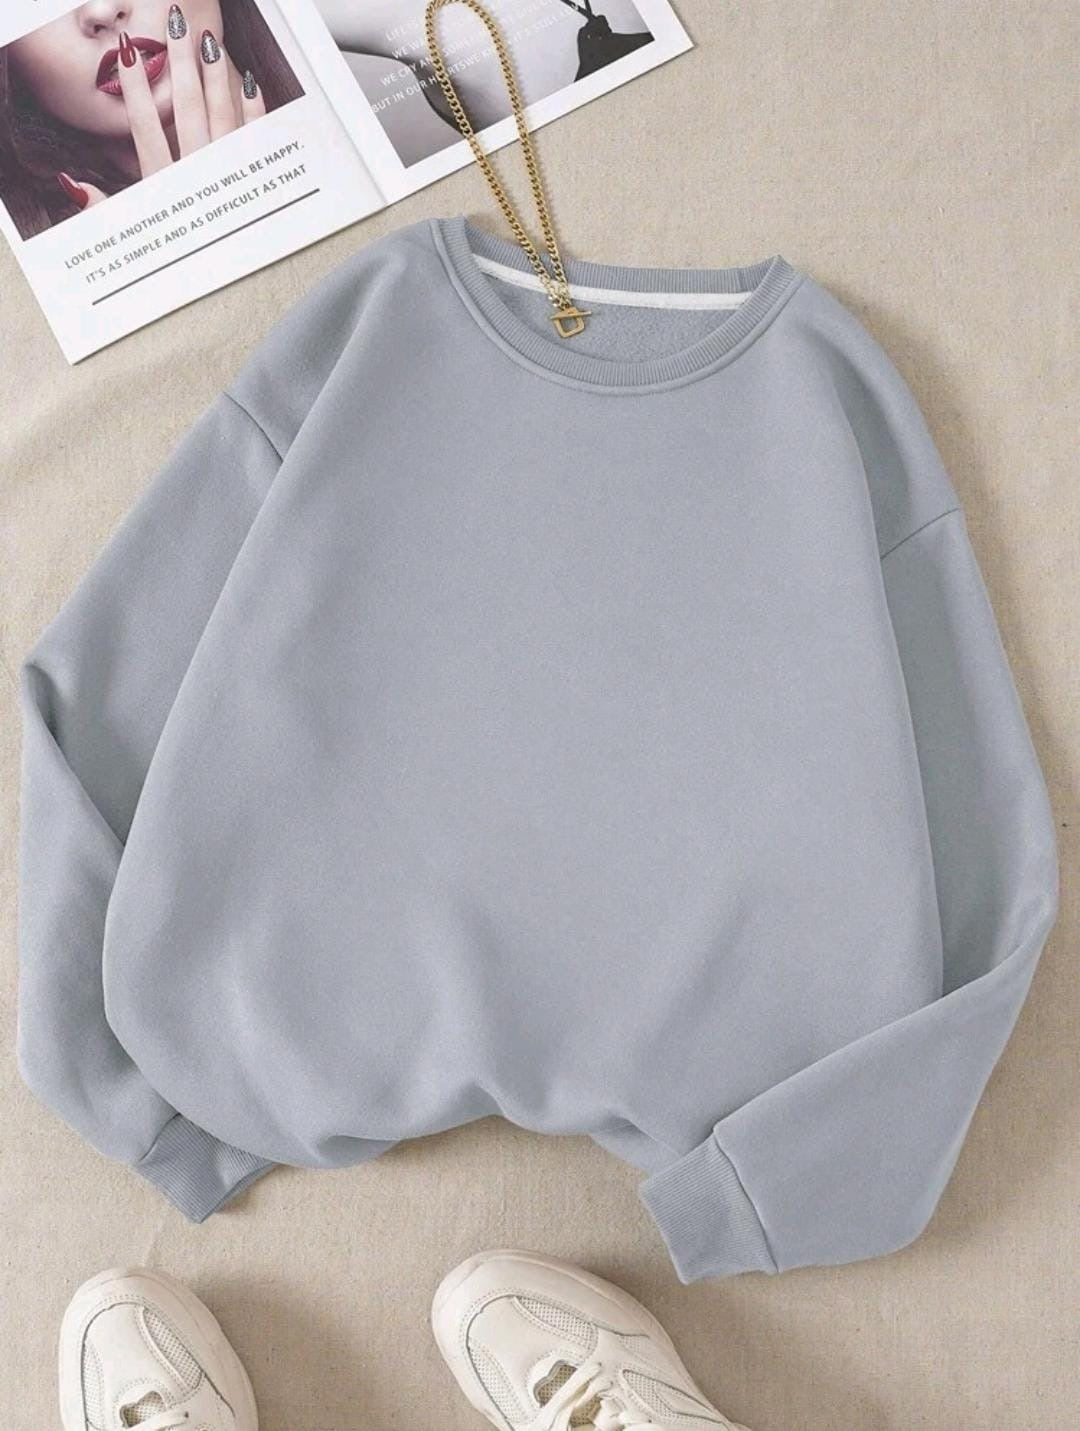 Basic Sweatshirt